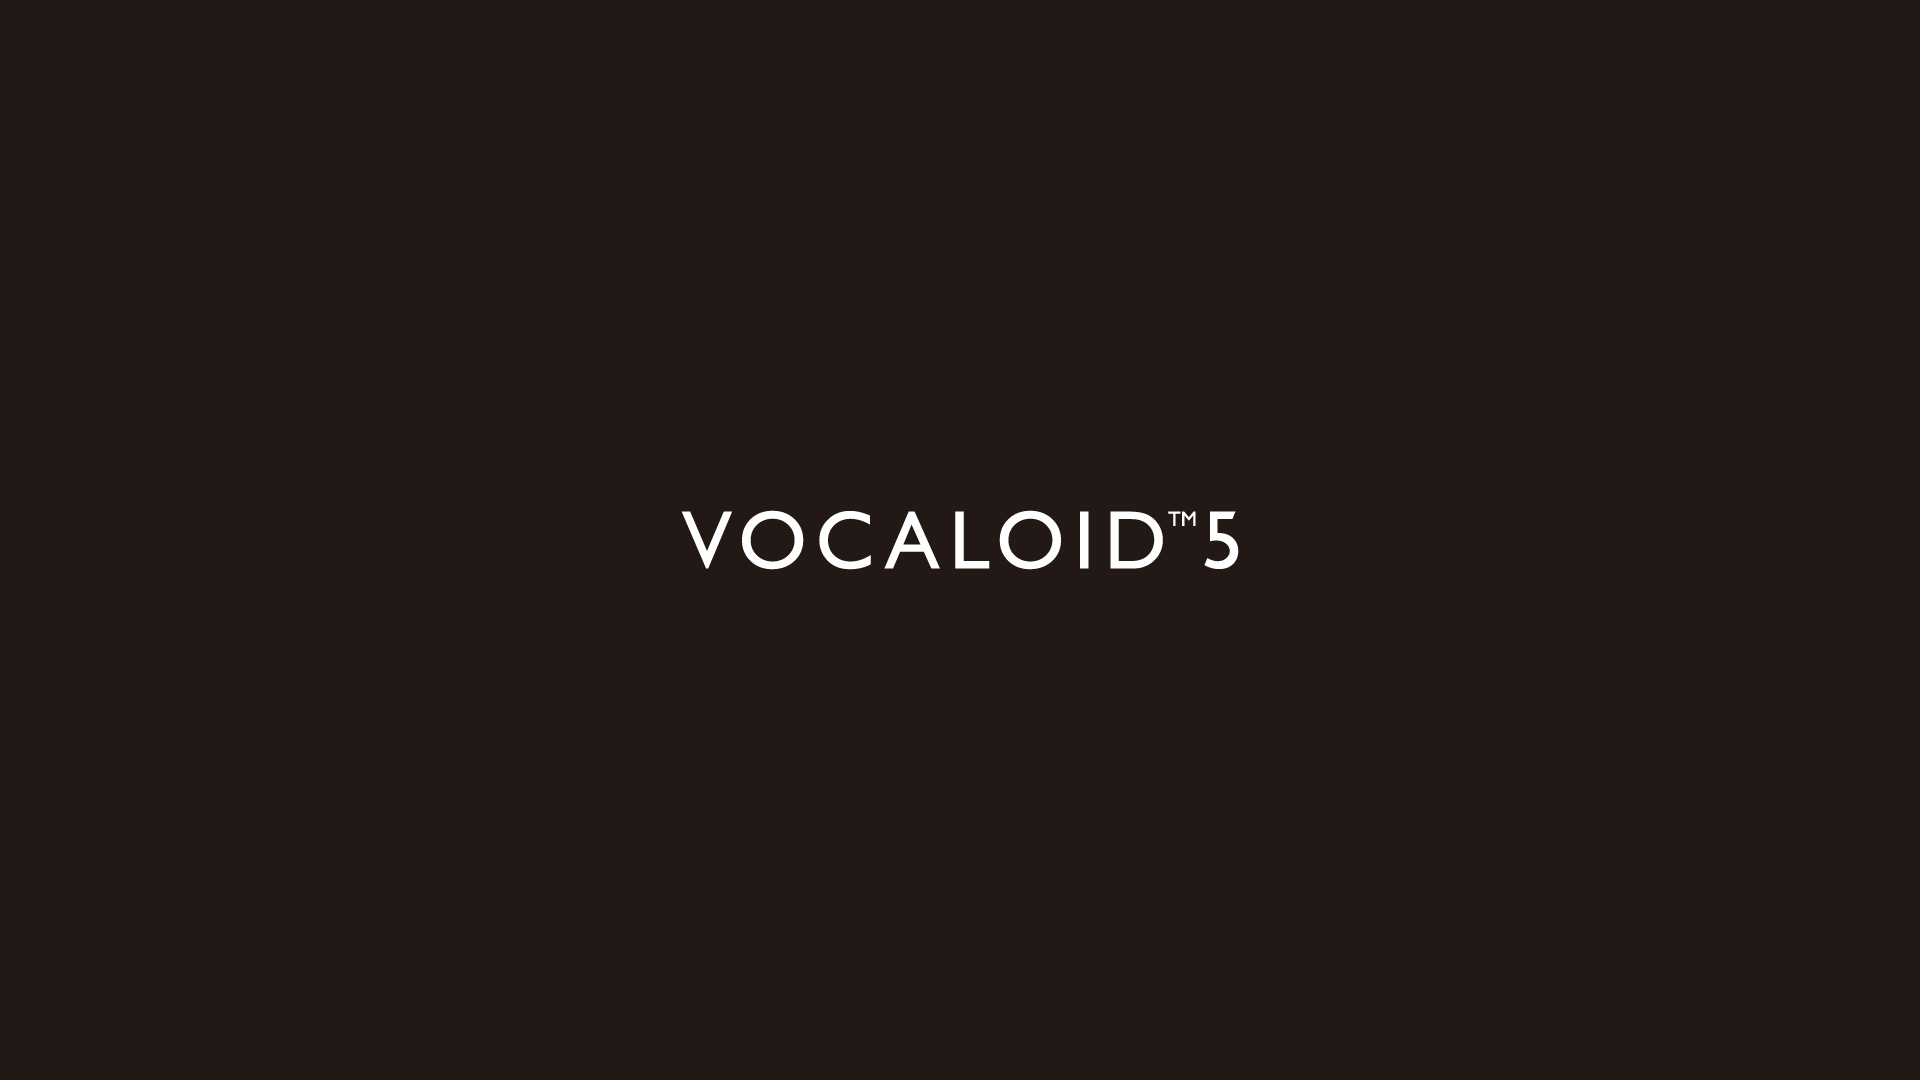 www.vocaloid.com image